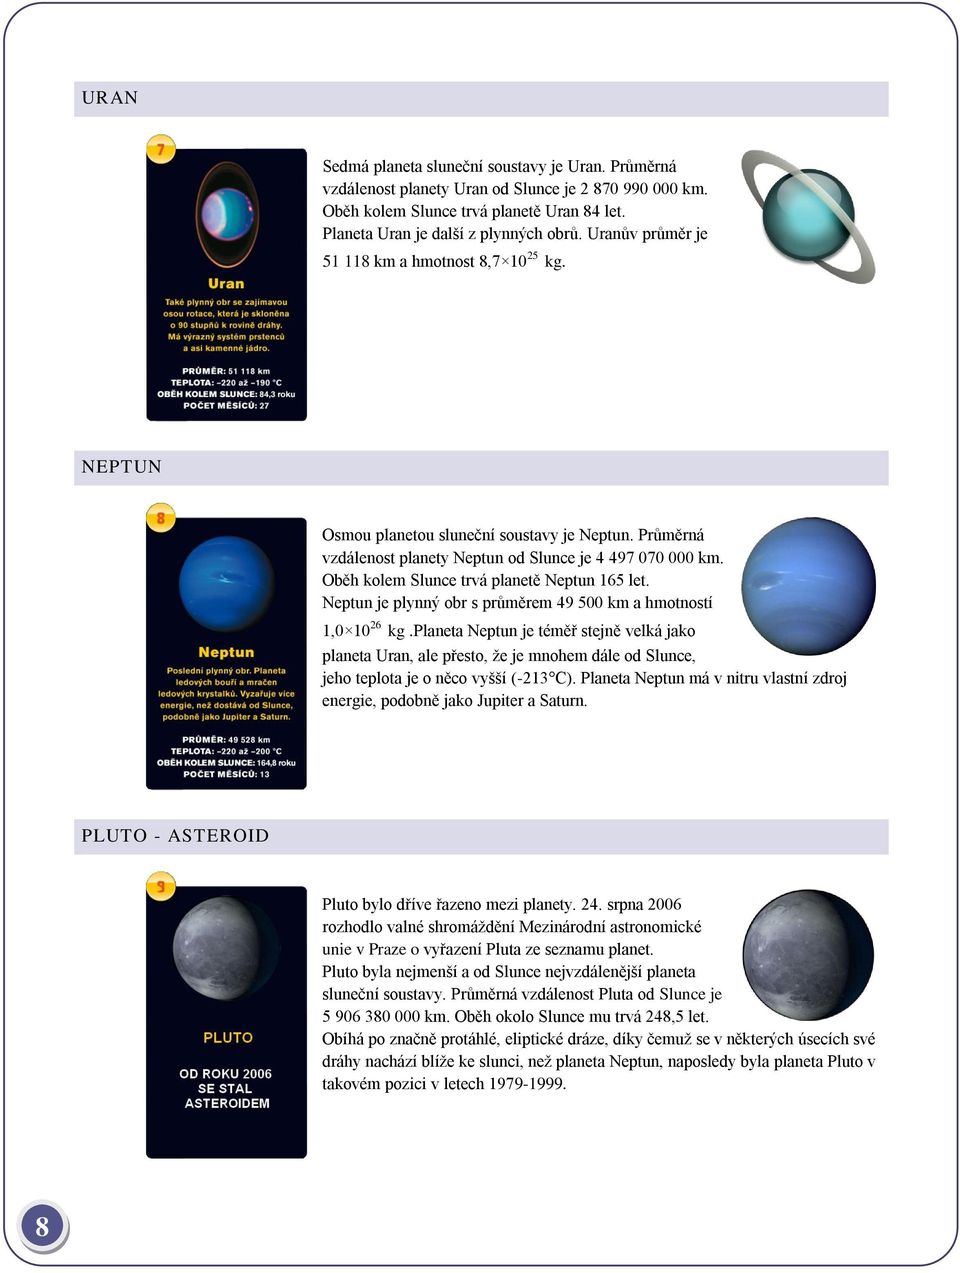 Oběh kolem Slunce trvá planetě Neptun 165 let. Neptun je plynný obr s průměrem 49 500 km a hmotností 1,0 10 26 kg.